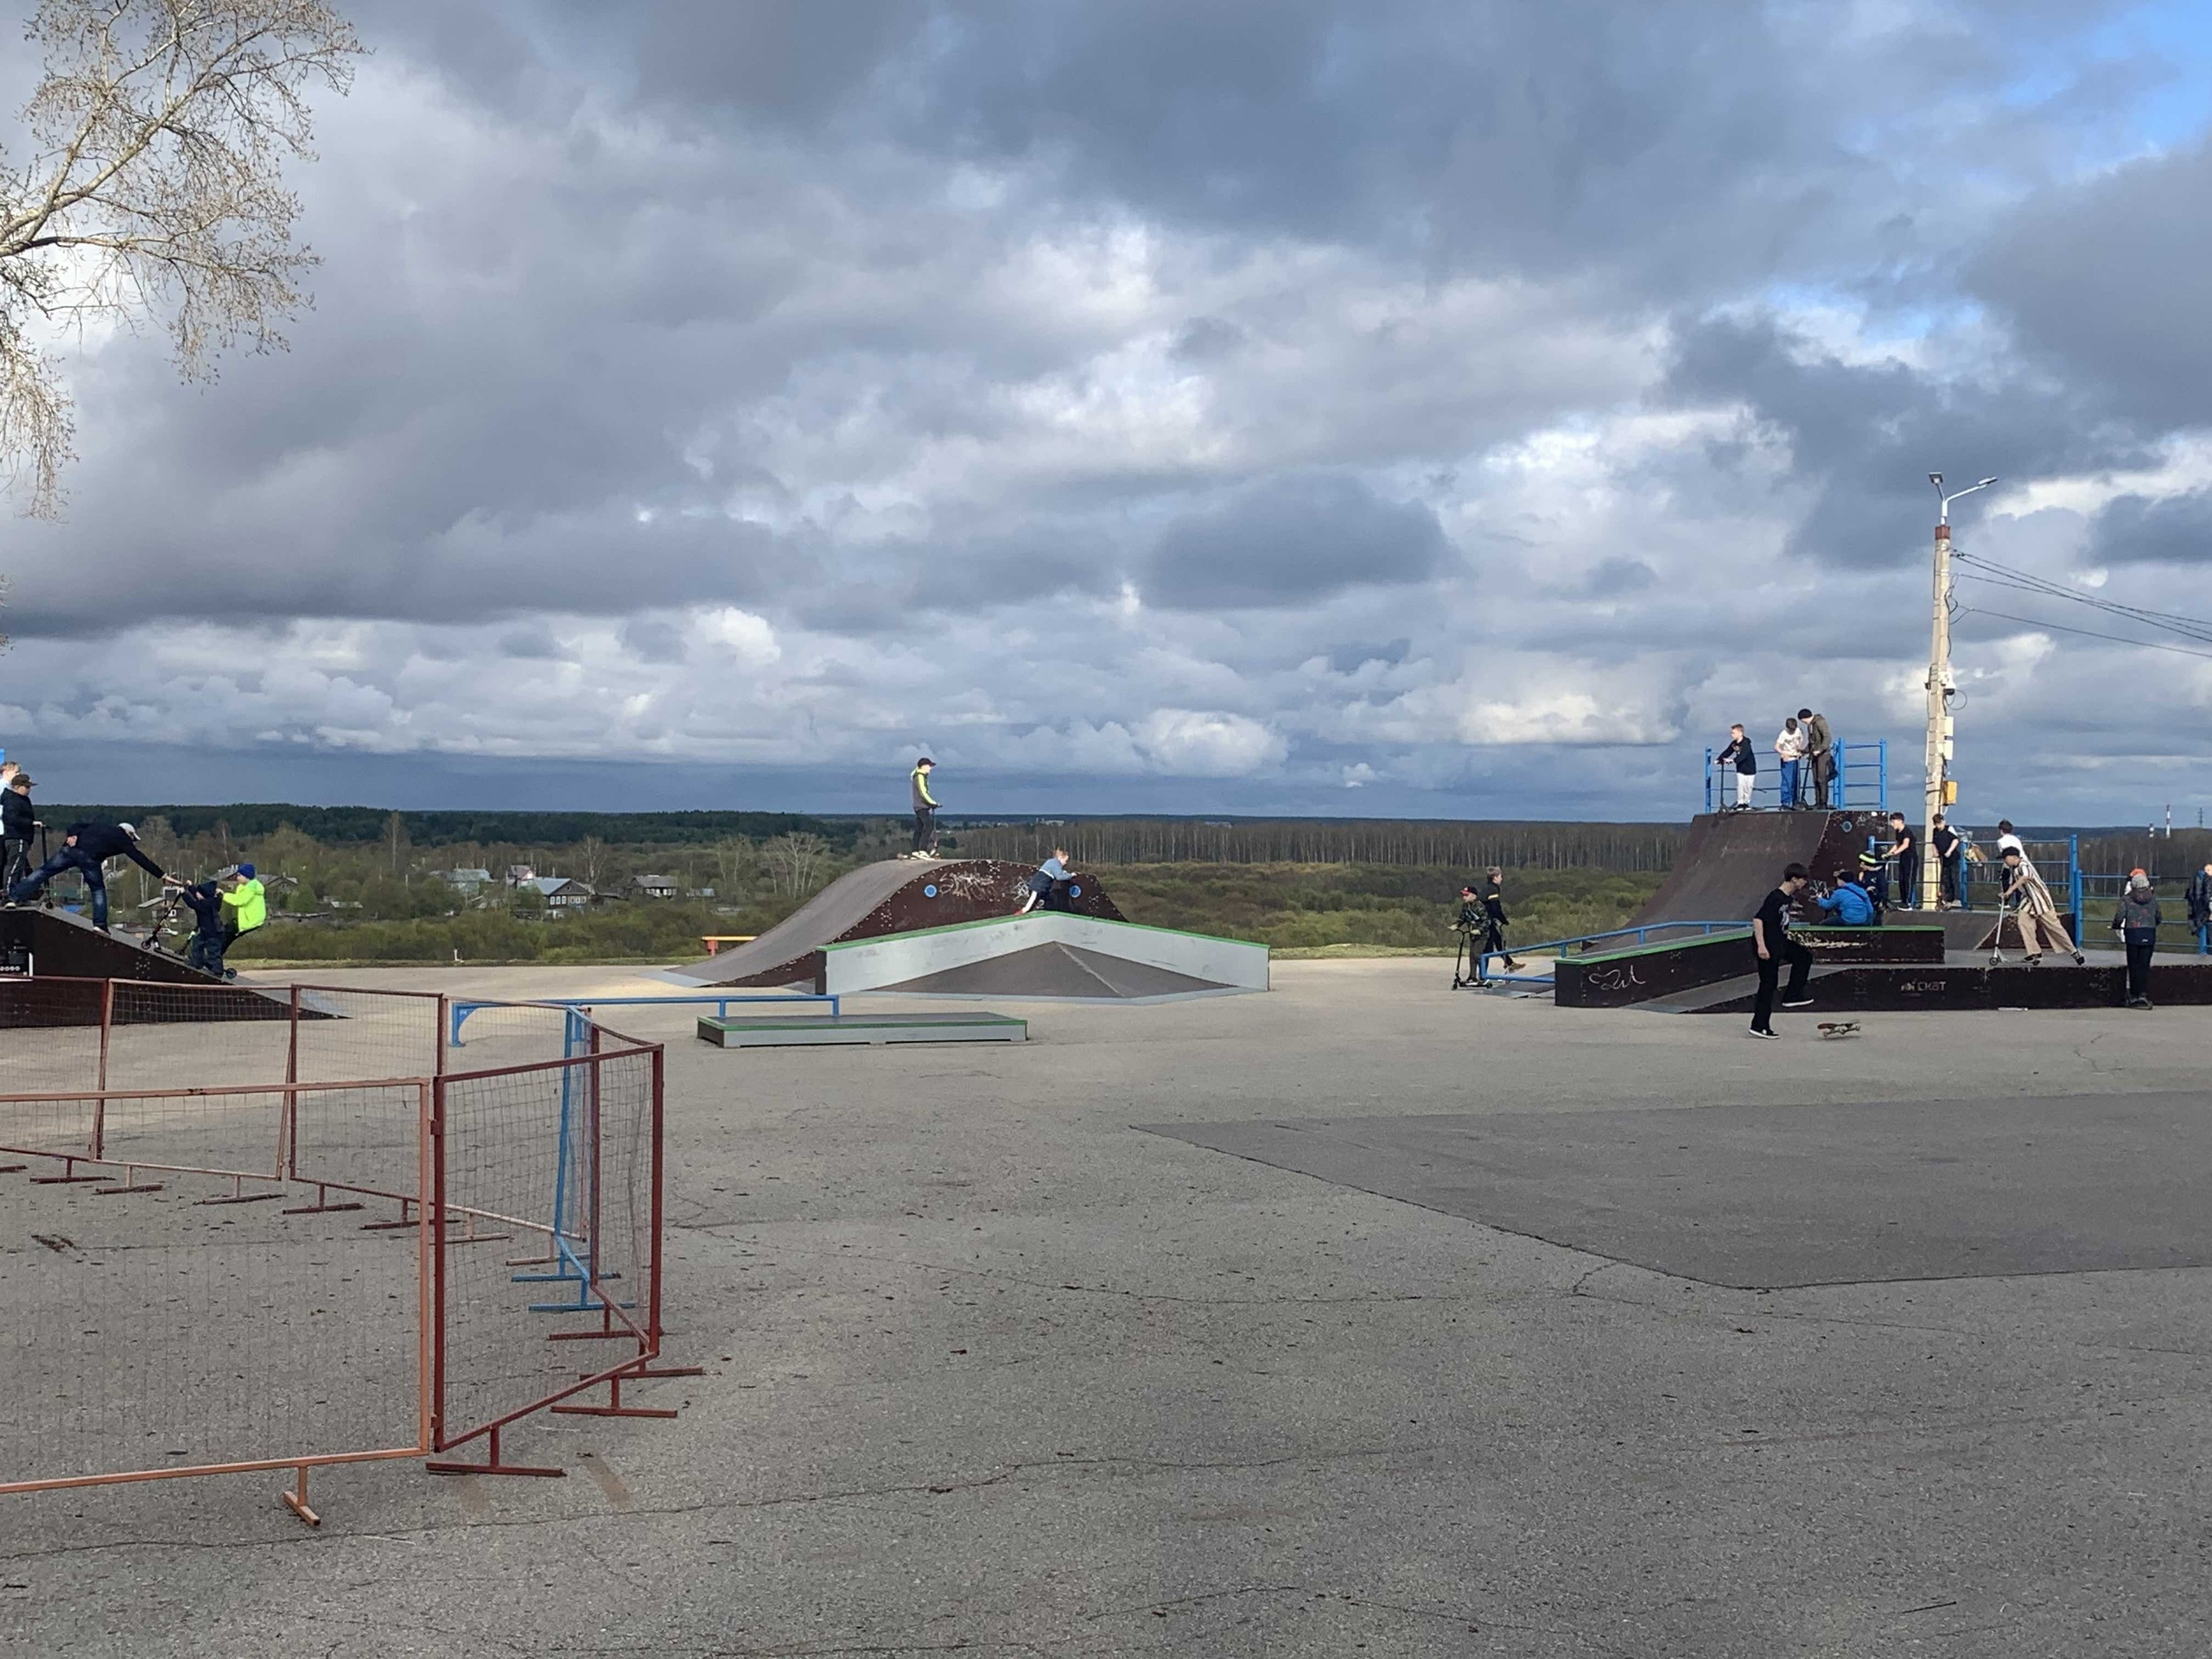 Молодёжь Сыктывкара собирает подписи для новой скейт-зоны